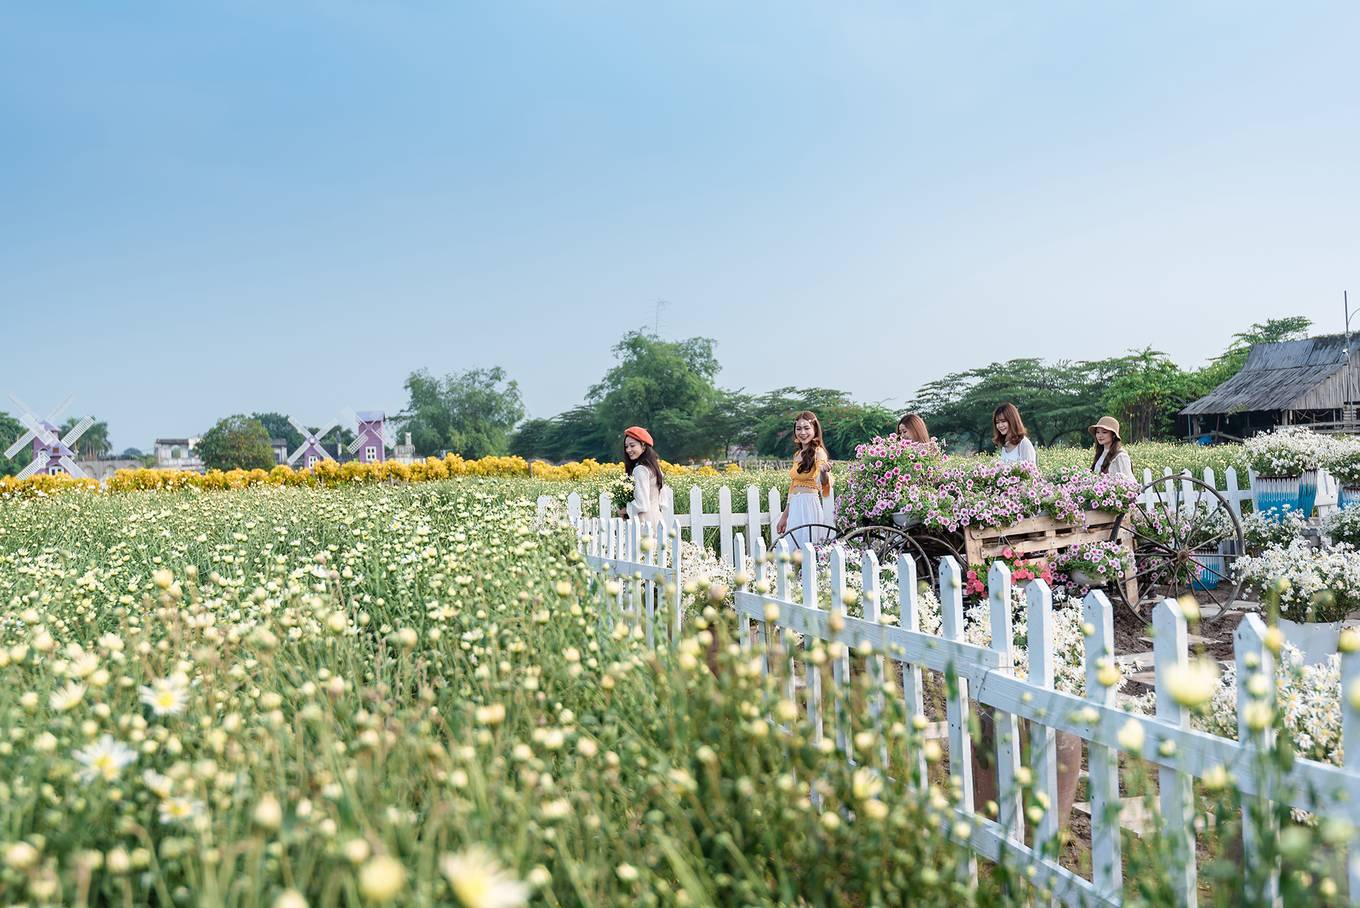 Thảo nguyên hoa Long Biên là một địa điểm chụp ảnh đẹp ở Hà Nội lãng mạn dành cho các cặp đôi lẫn các bạn trẻ đam mê sống ảo